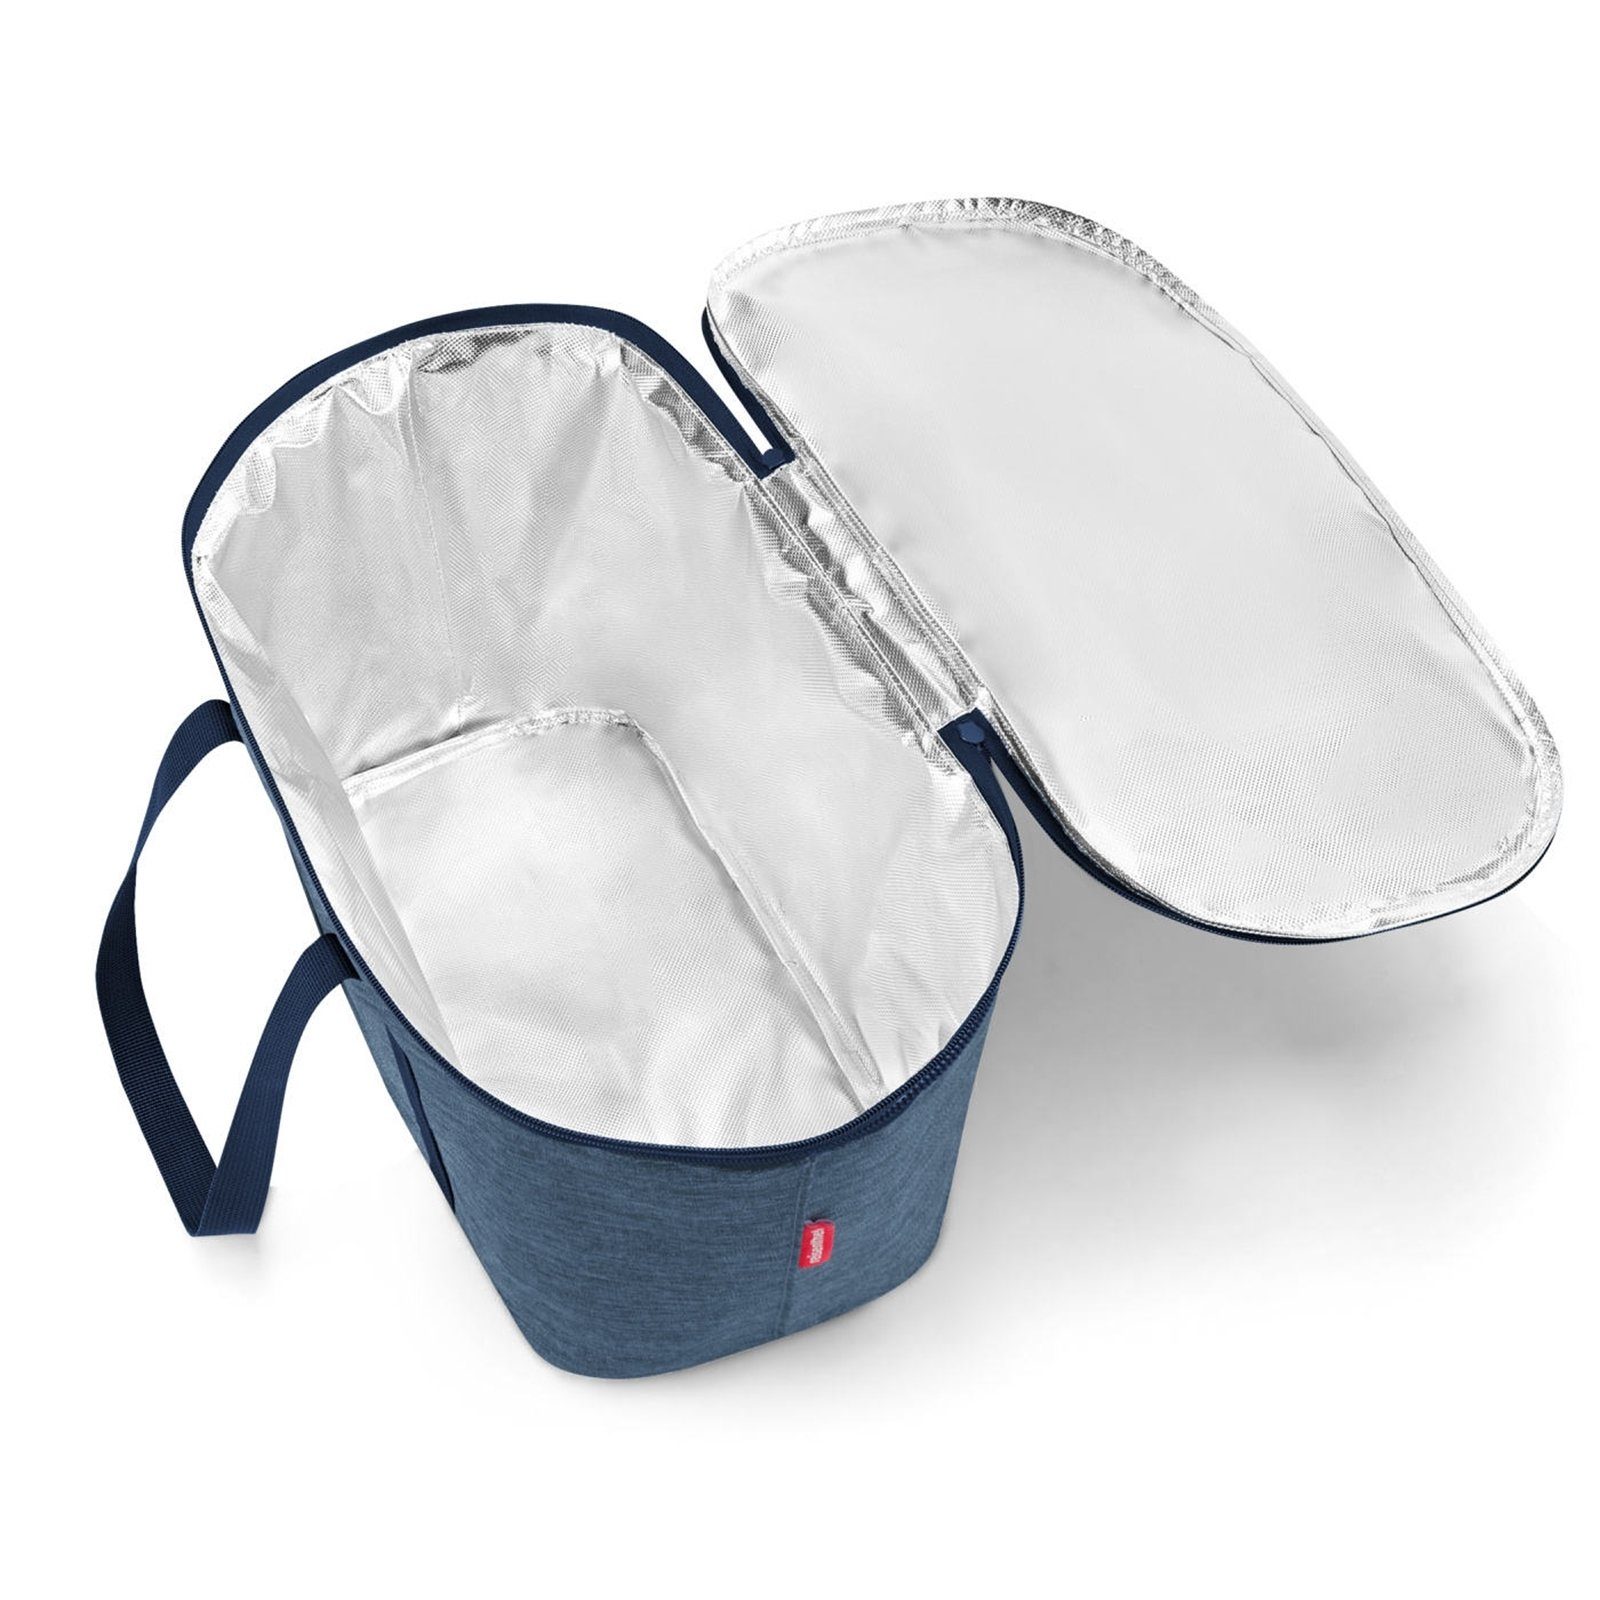 REISENTHEL® Aufbewahrungstasche twist coolerbag blue Kühltasche